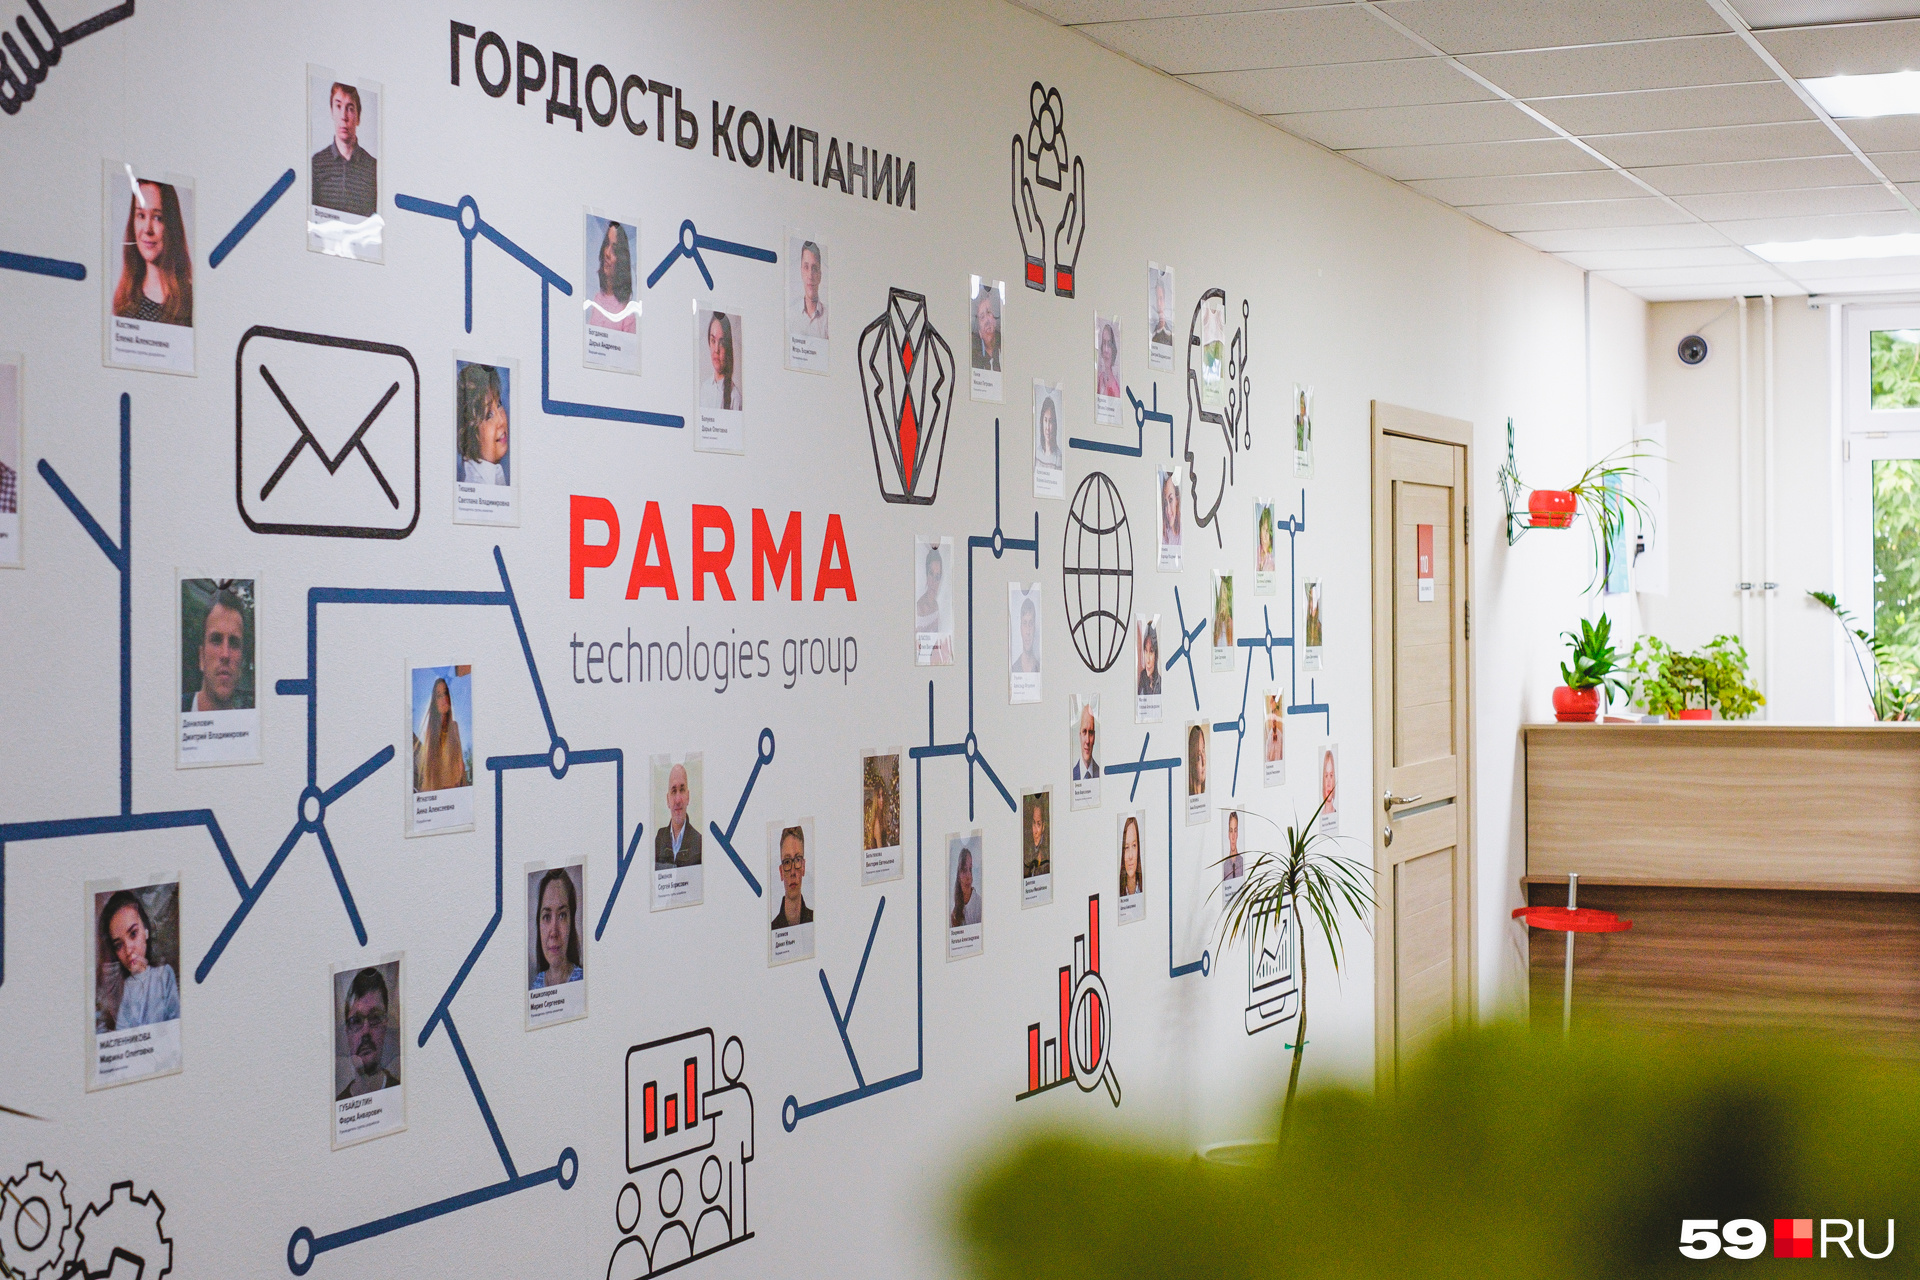 Стена «Гордость компании» оформлена в фирменных цветах компании: красном, темно-синем и белом